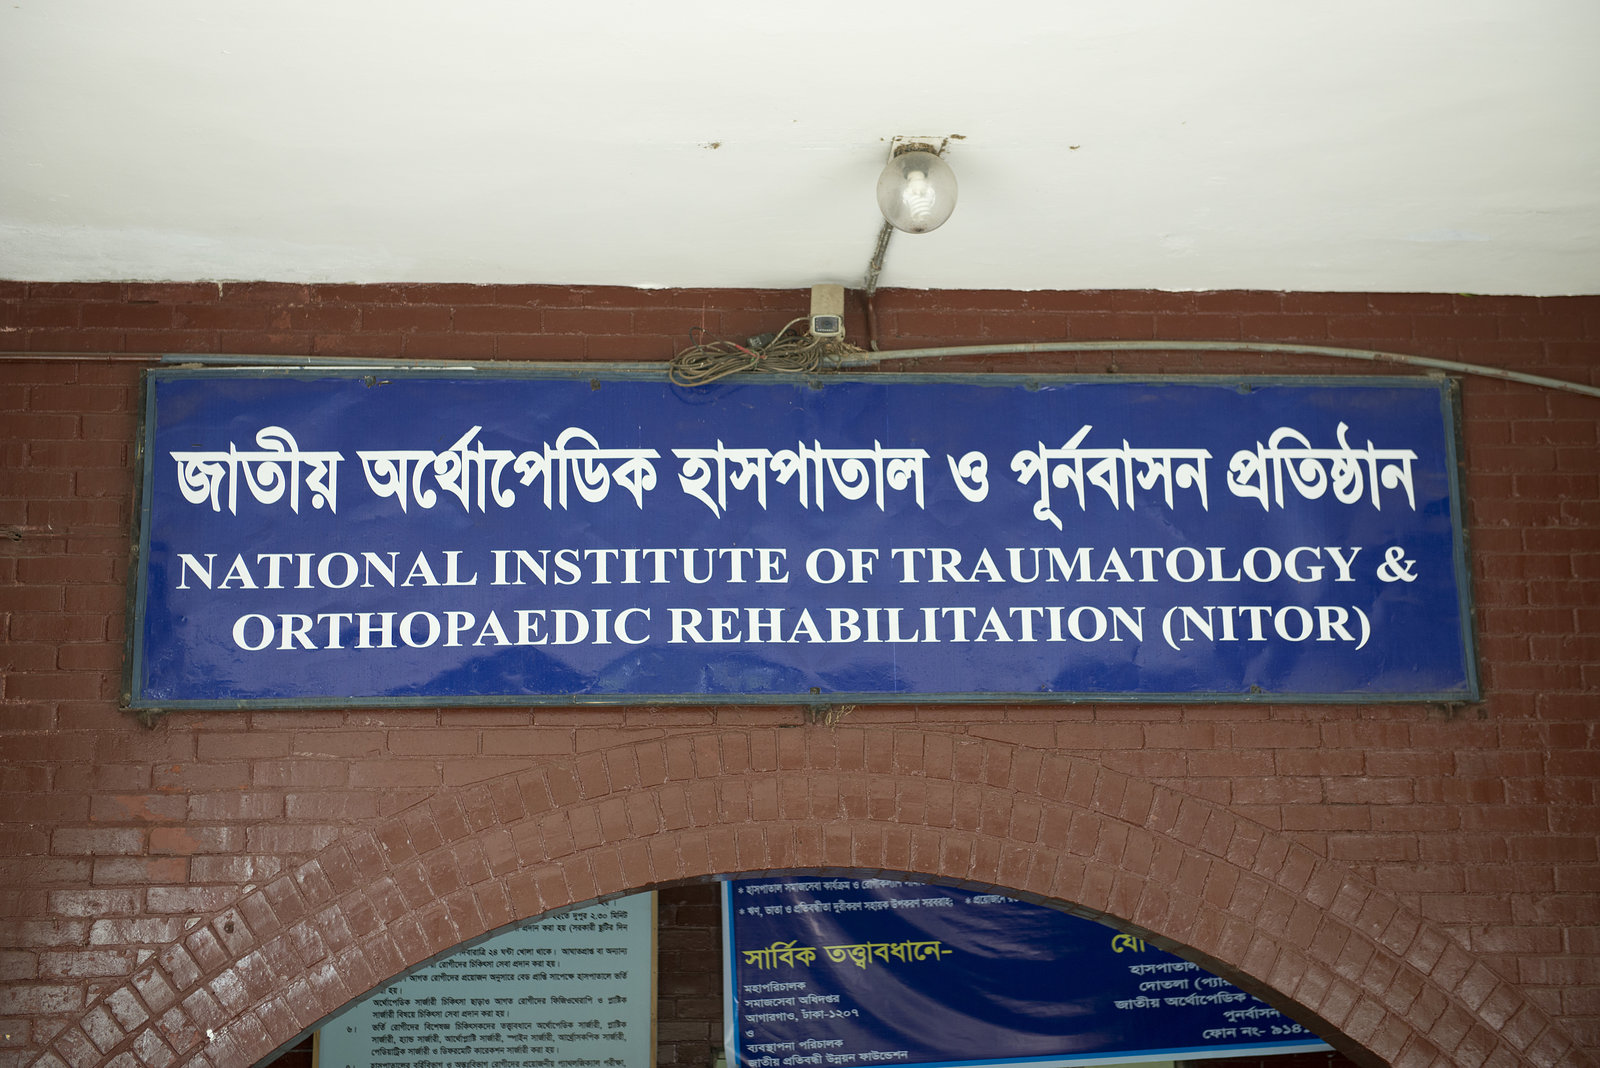 National Institute of Traumatology & Orthopaedic Rehabilitation